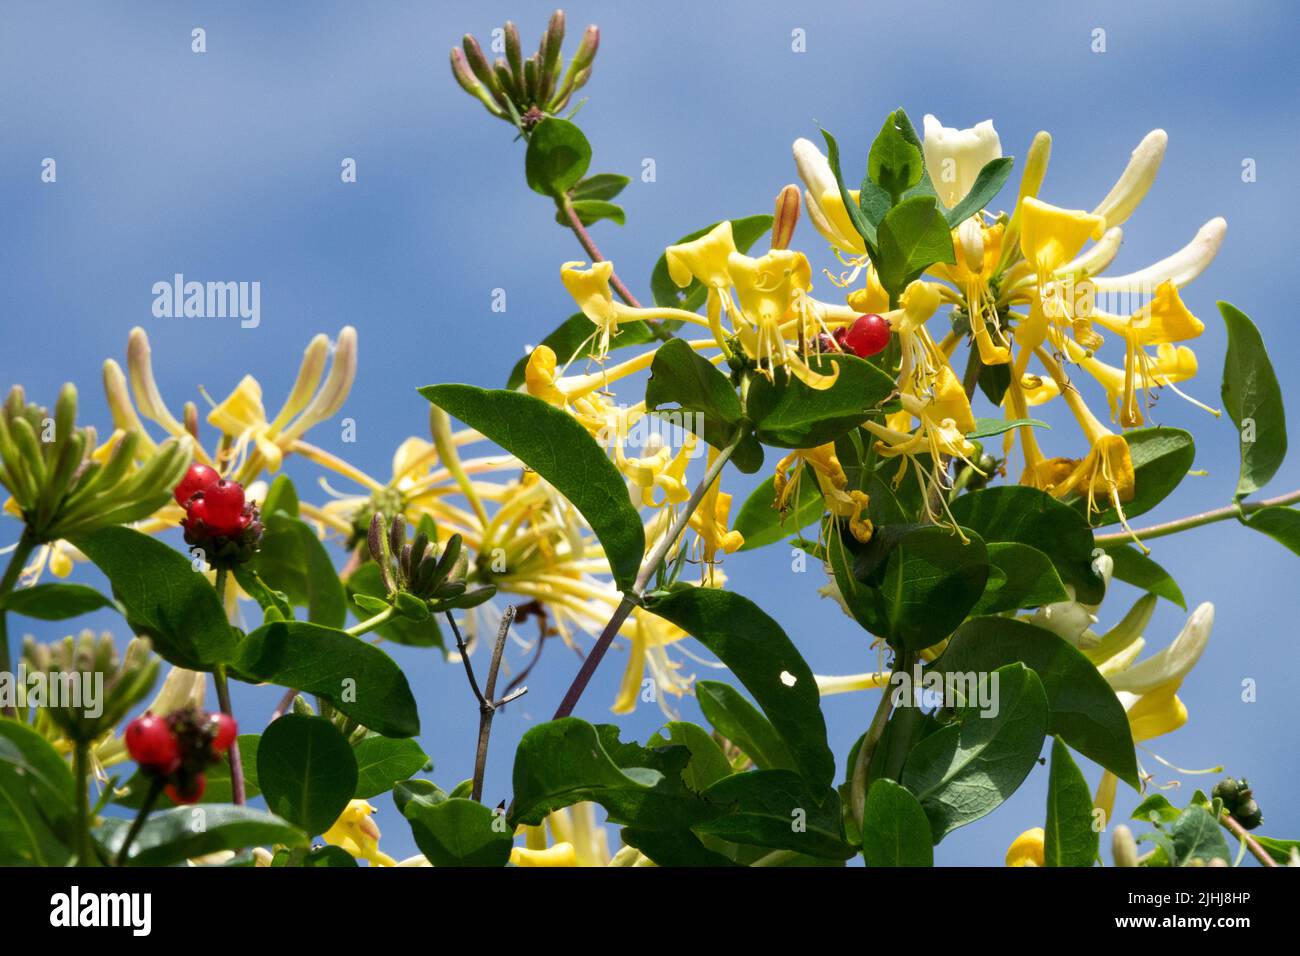 Red Berries, Lonicera periclymenum, Honeysuckle, White yellow, Flower Stock Photo